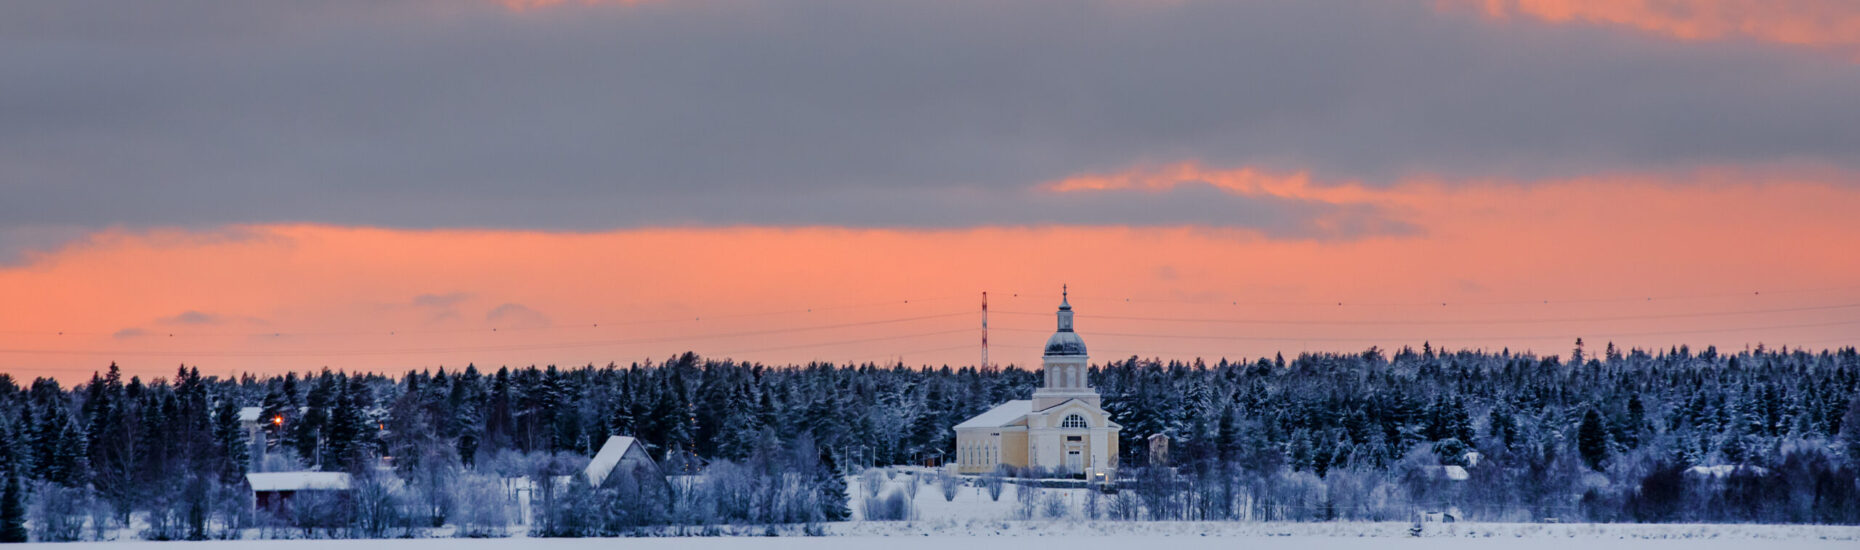 Talvinen maisema. Etualalla luminen joen jää. Vastarannalla keltainen kirkko ja pienempi vanha kivikirkko, metsää sekä oranssinkeltainen pilvien halkoma taivas.